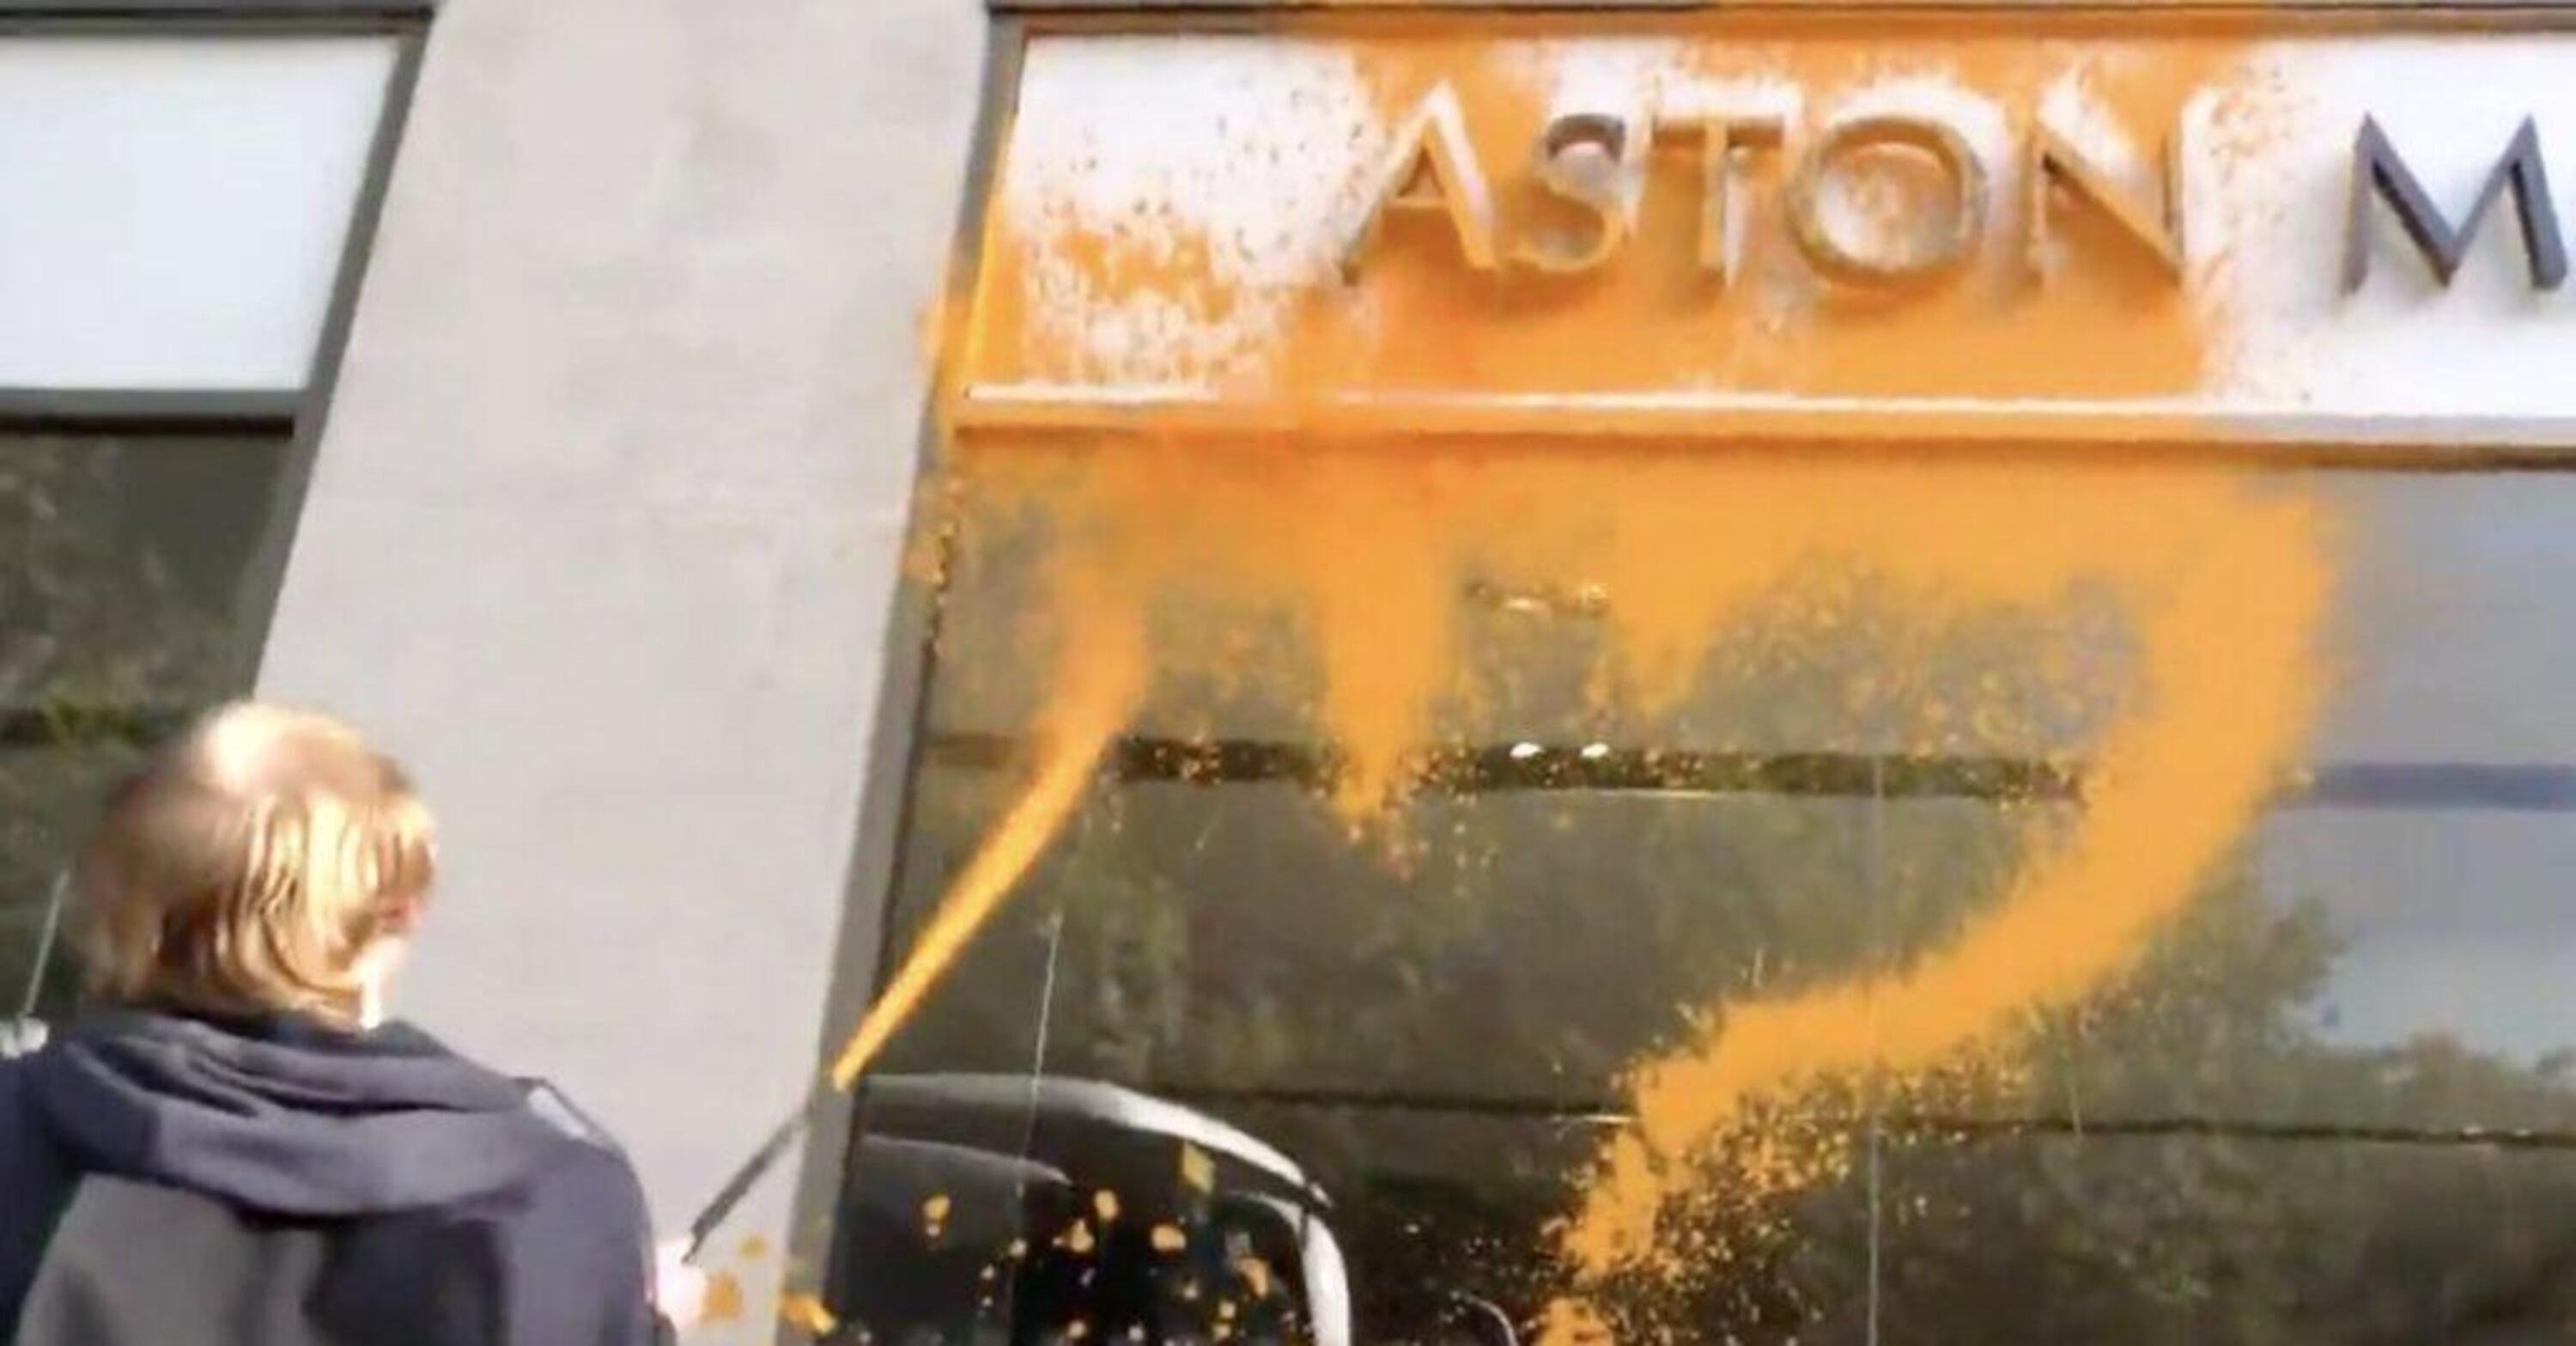 Aston Martin, lo showroom di Londra colpito dagli attivisti Stop Oil